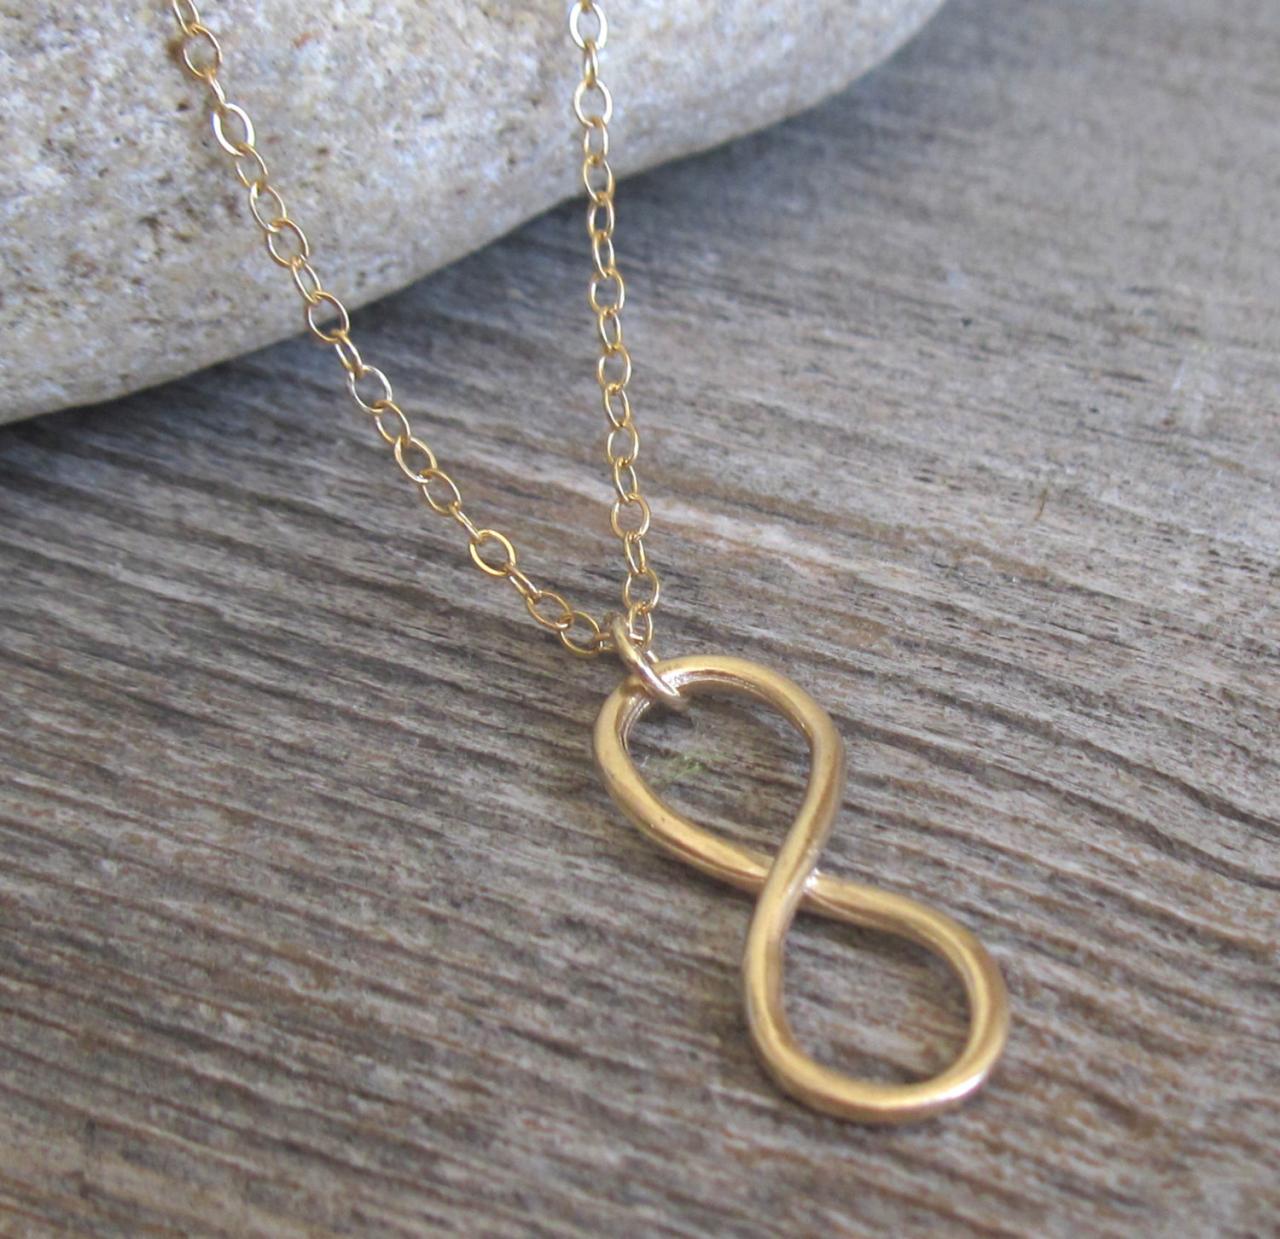 Men's Necklace - Men's Gold Necklace - Men Infinity Necklace - Men's Jewelry - Men's Gift - Boyfriend Gift -